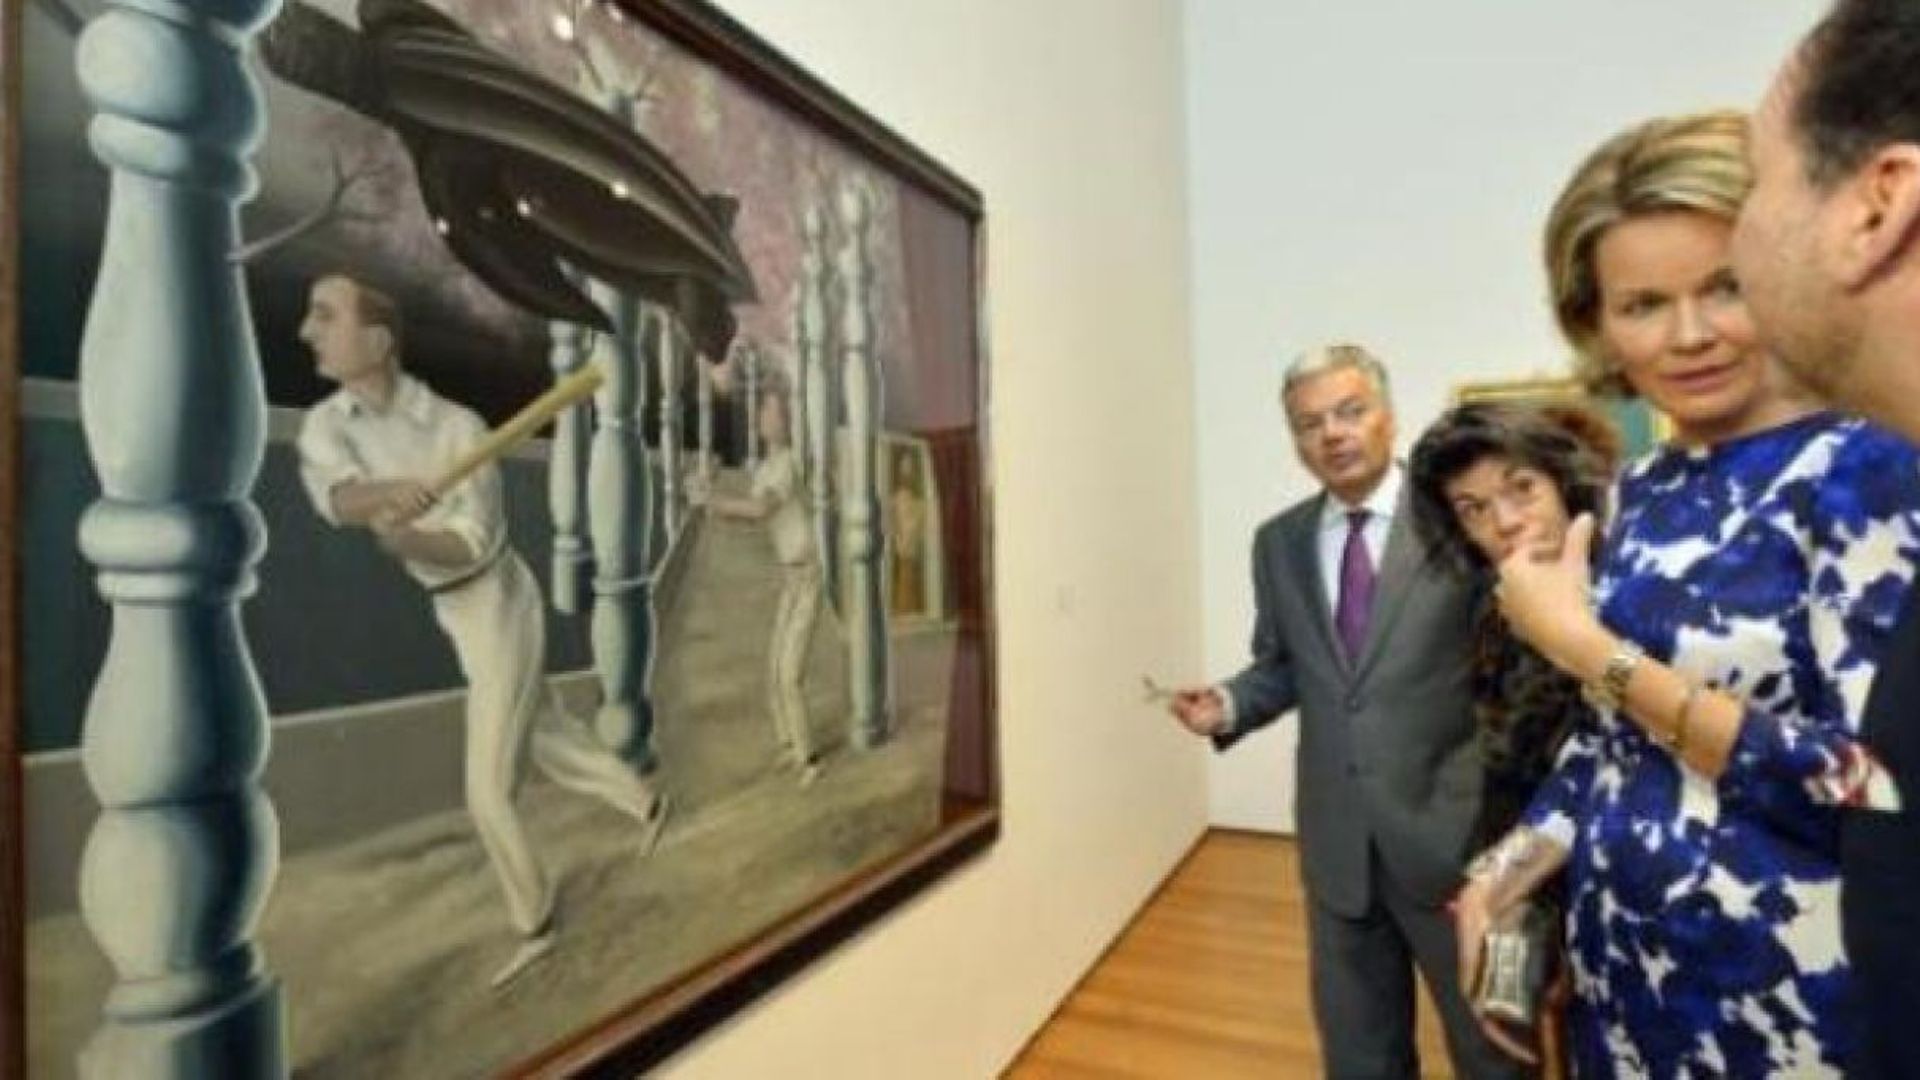 La reine Mathilde visite en avant-première l'exposition Magritte au MoMa